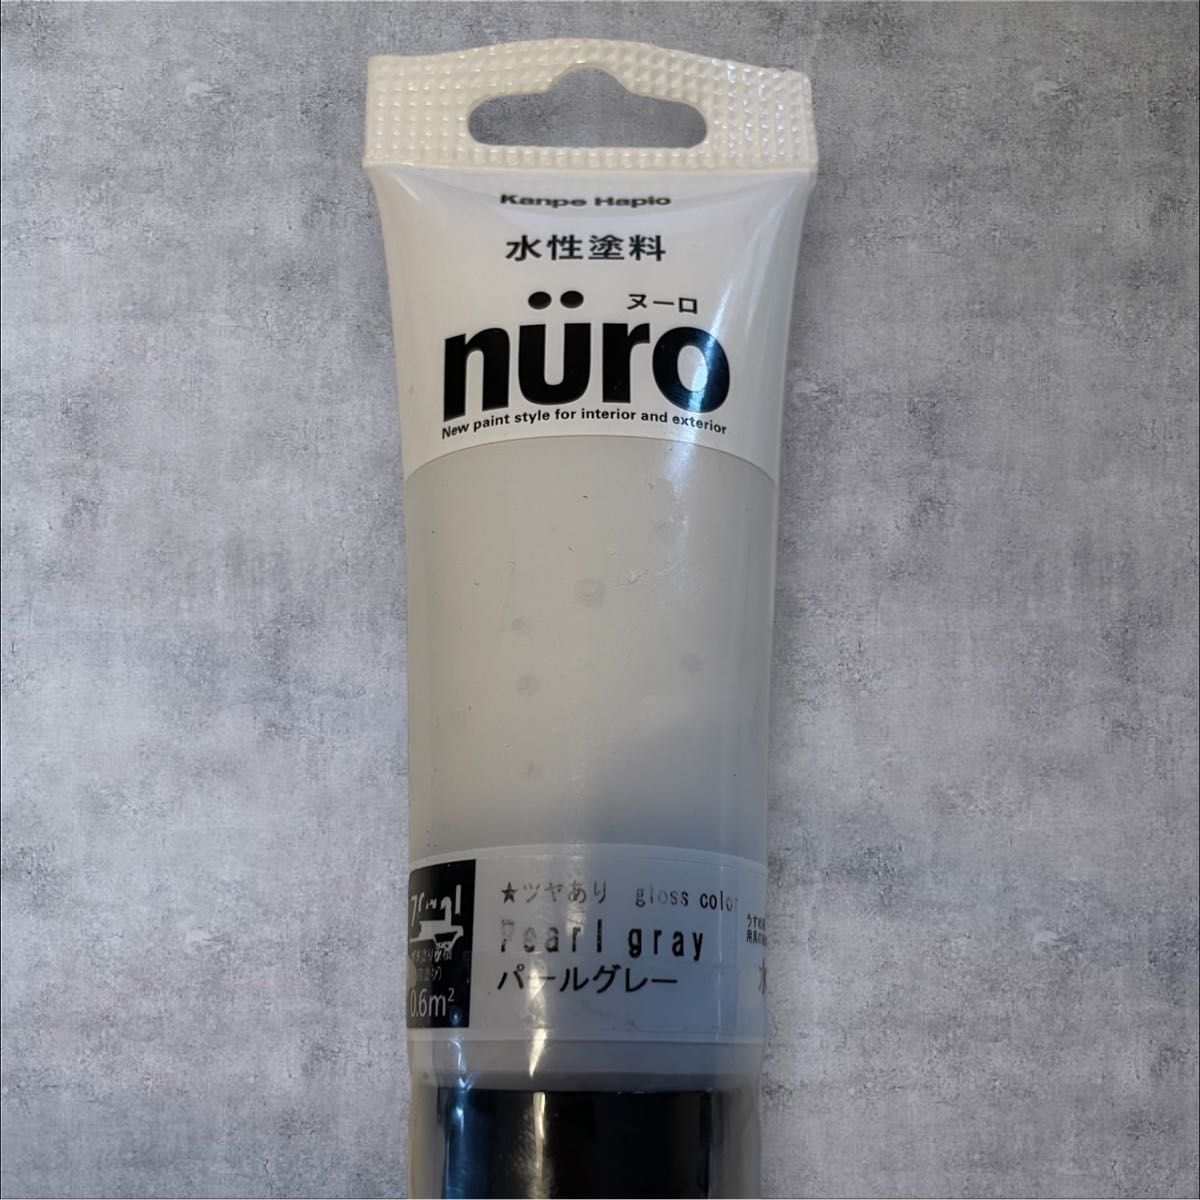 【新品未使用】nuro(ヌーロ)水性塗料70mlパールグレー